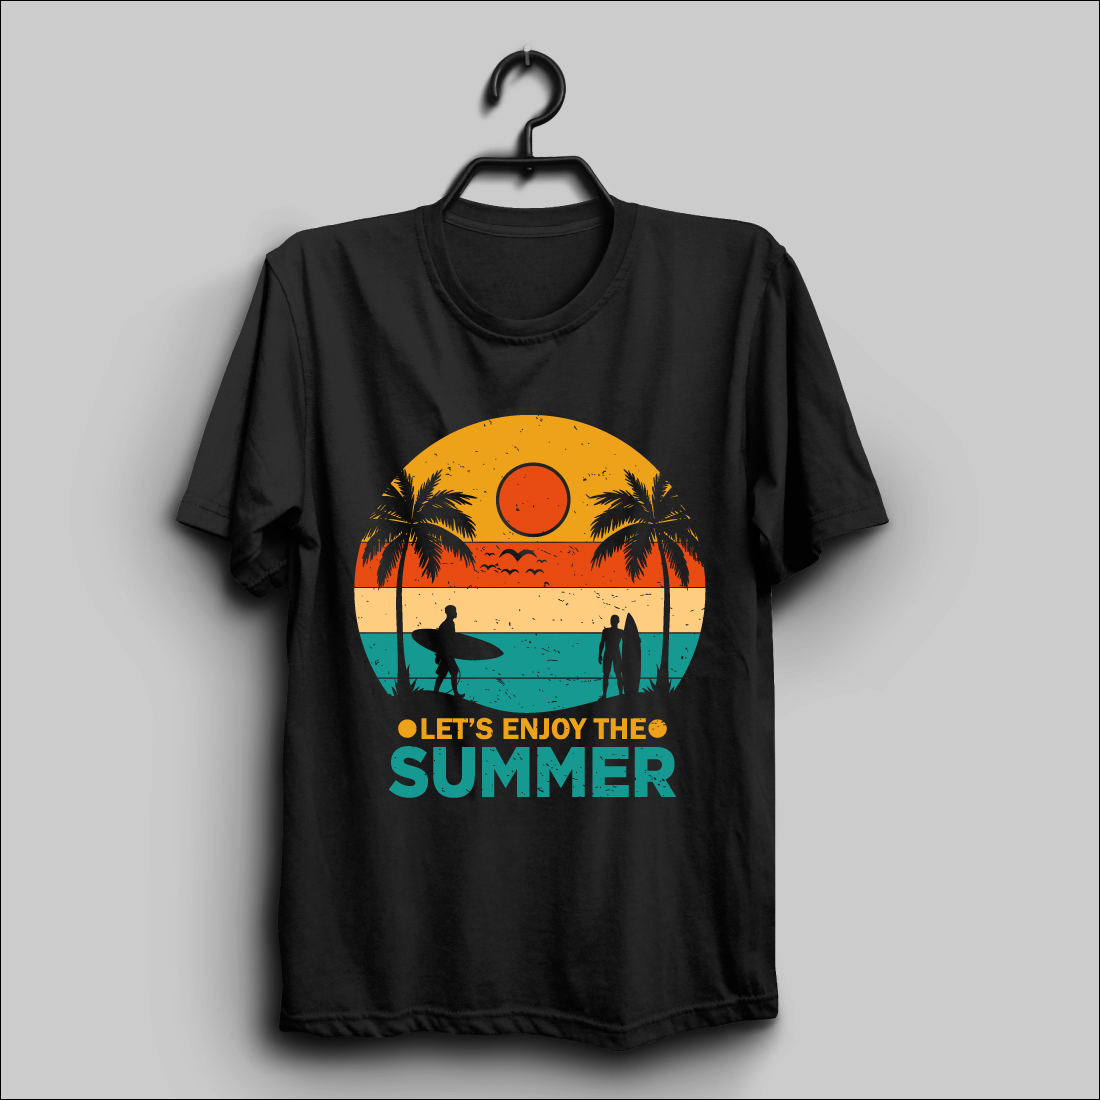 summer t shirt design 4 339